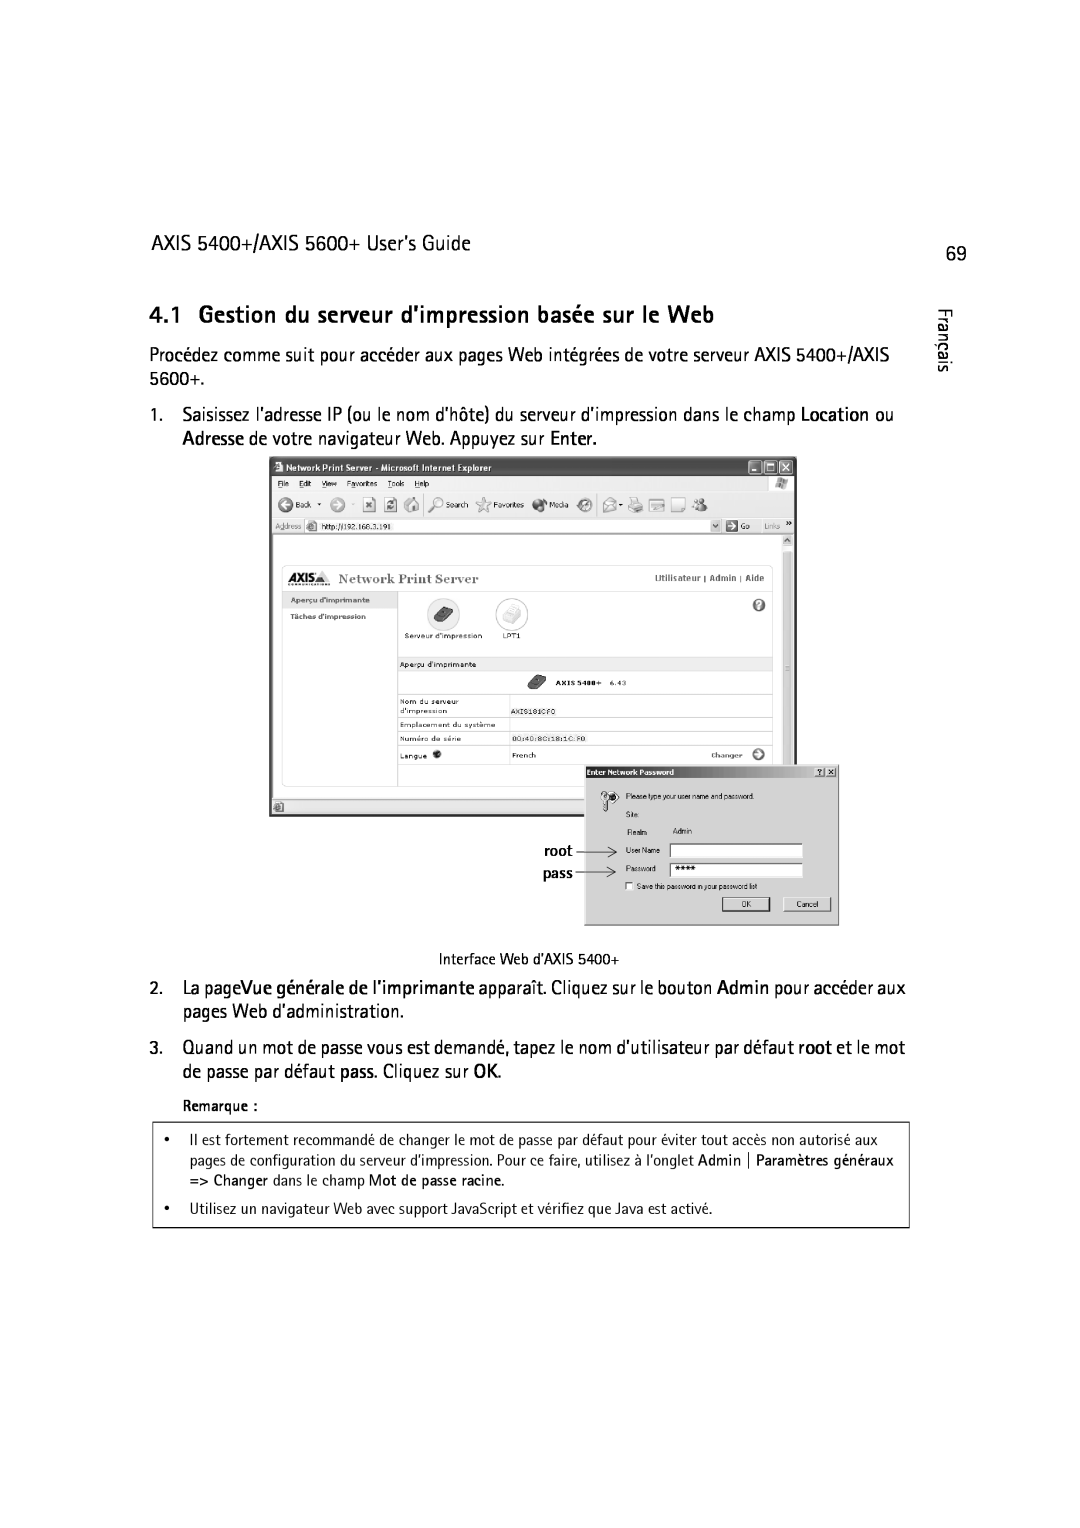 Dell manual Gestion du serveur d’impression basée sur le Web, AXIS 5400+/AXIS 5600+ User’s Guide 